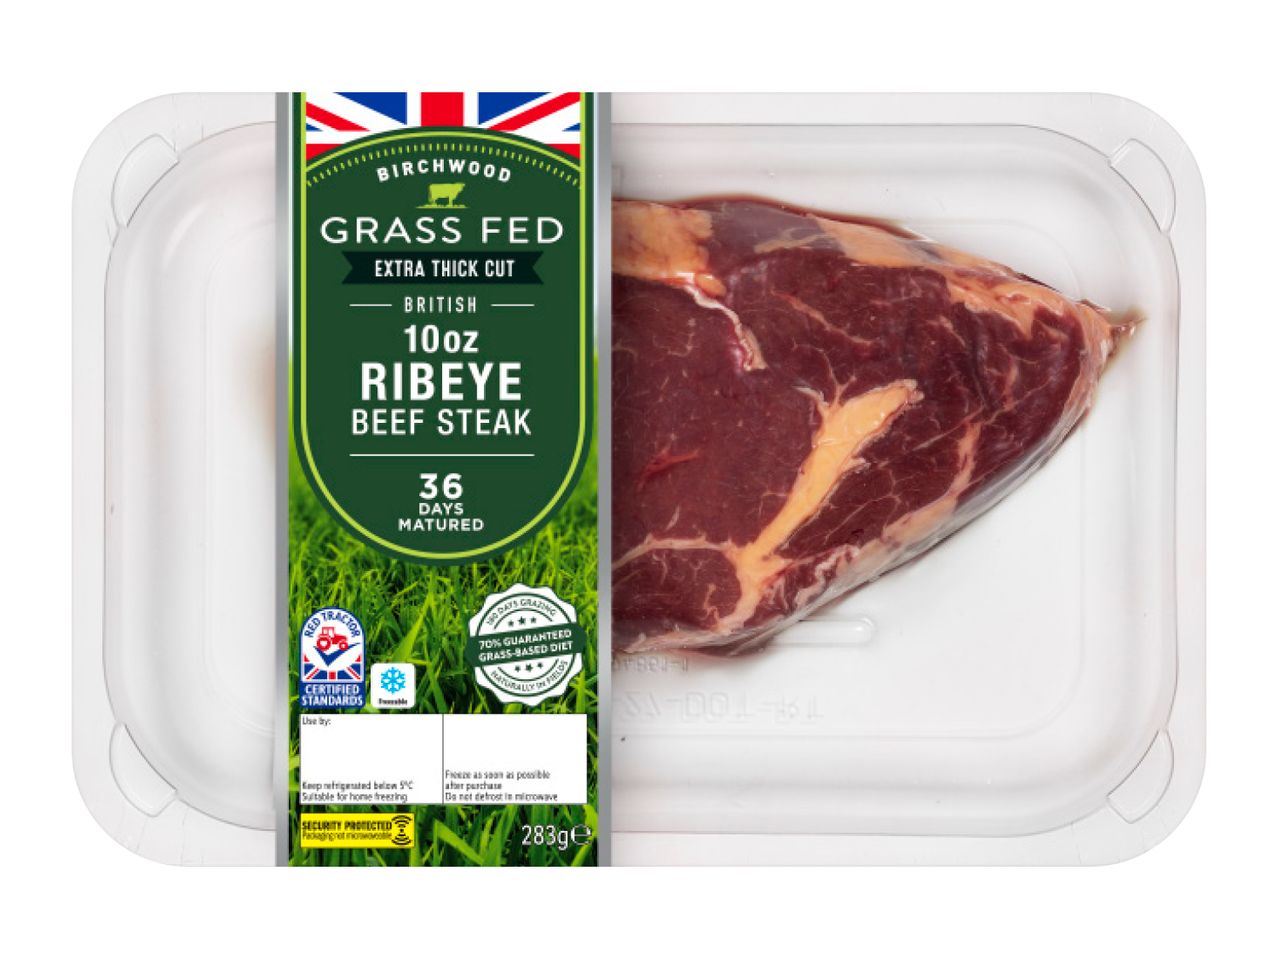 Go to full screen view: Birchwood Grass Fed 10oz British Beef 36-Day Matured Ribeye Steak - Image 1